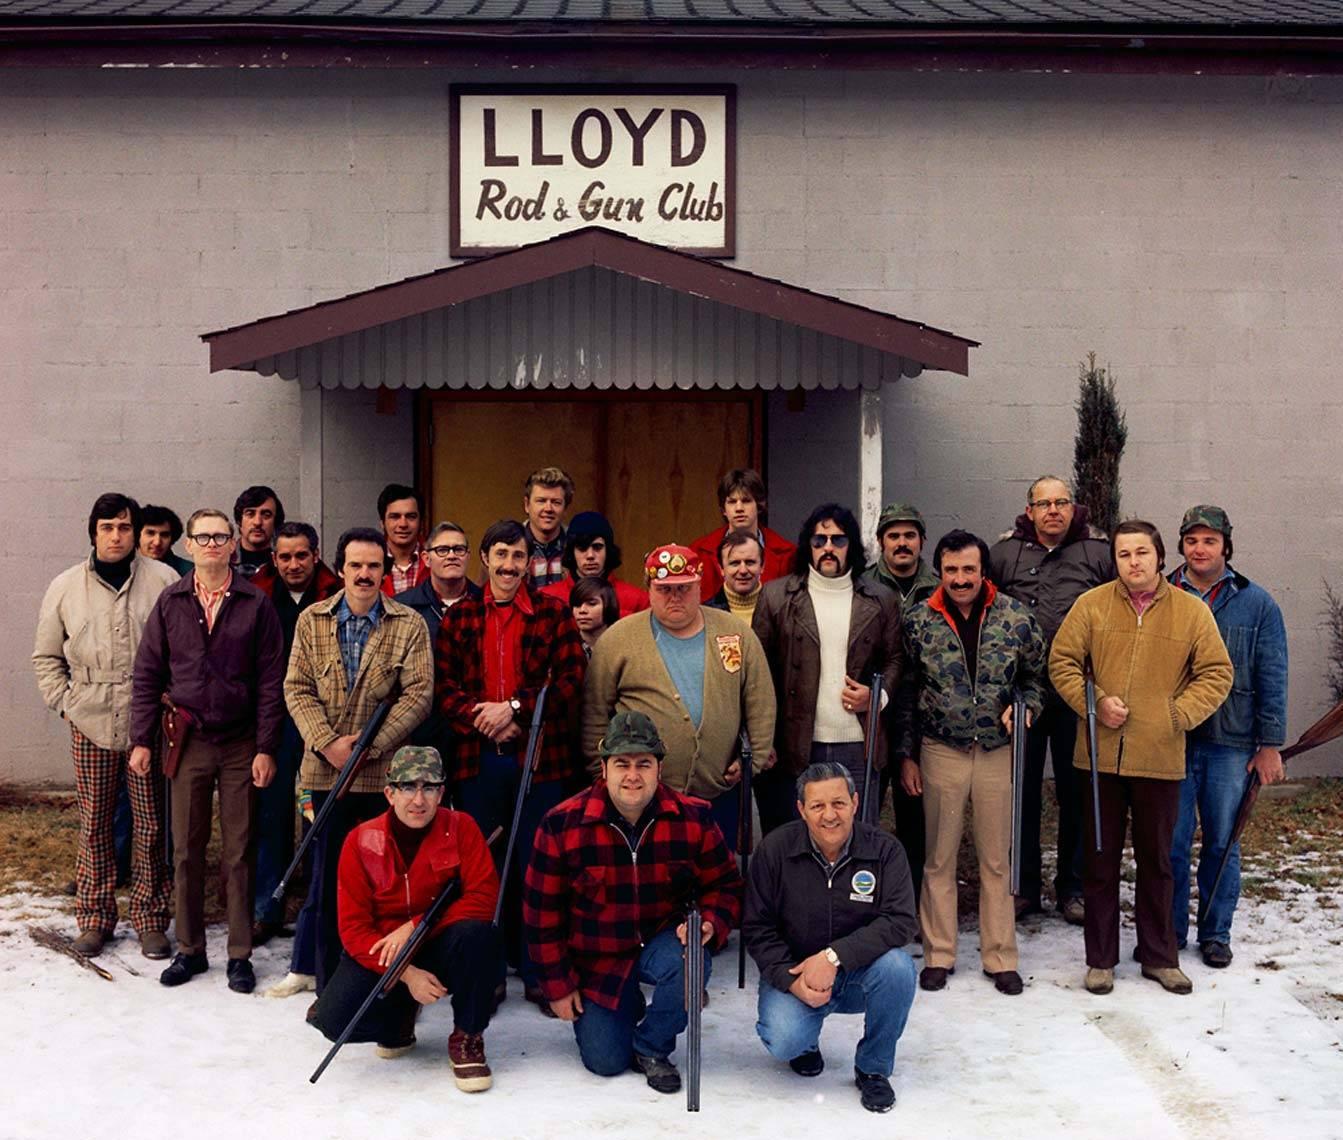 Gruppenporträt Lloyd Rod & Gun Club